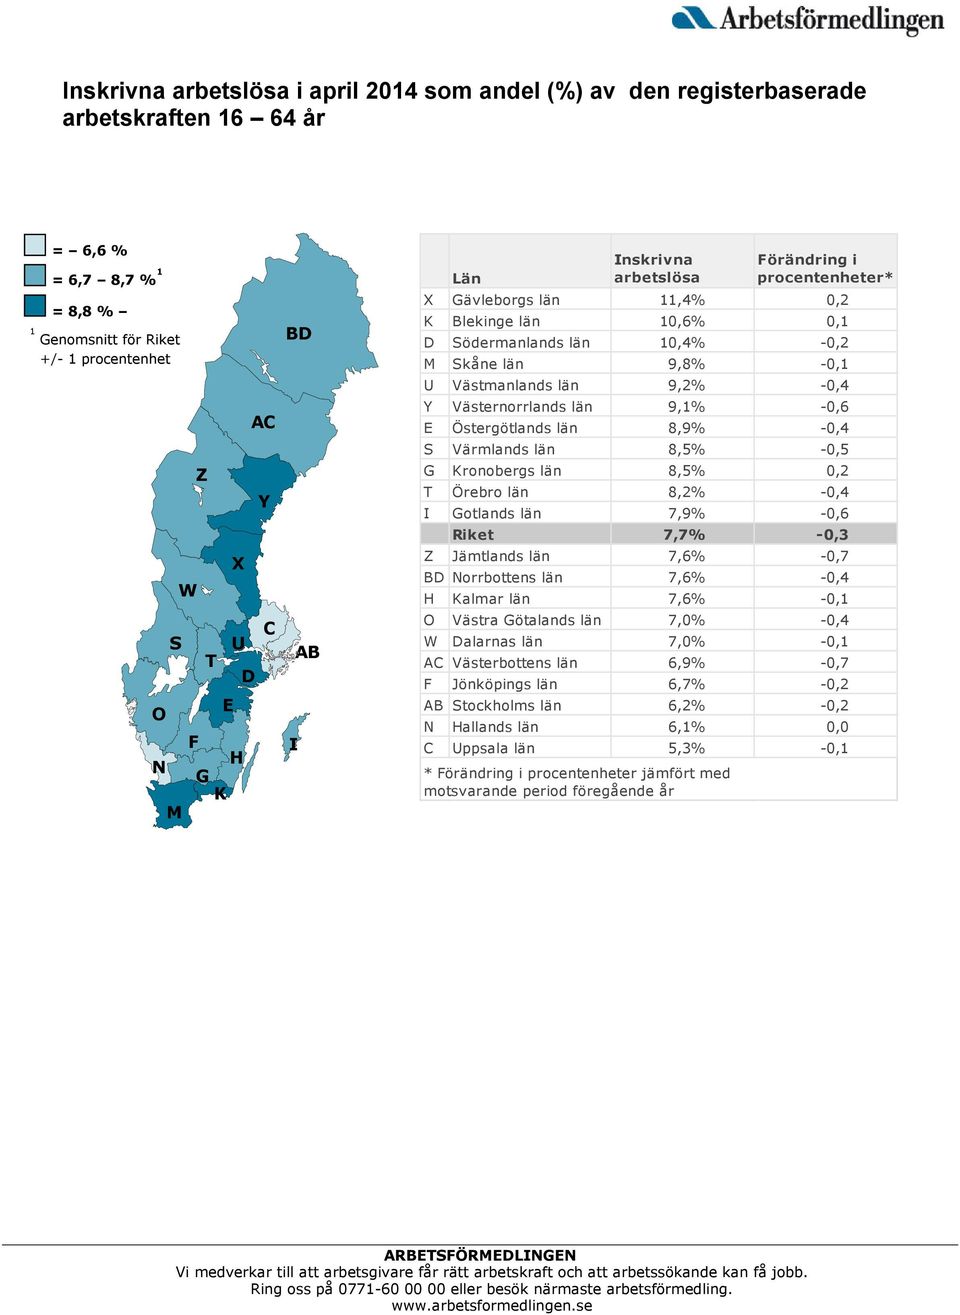 Y Västernorrlands län 9,1% -0,6 E Östergötlands län 8,9% -0,4 S Värmlands län 8,5% -0,5 G Kronobergs län 8,5% 0,2 T Örebro län 8,2% -0,4 I Gotlands län 7,9% -0,6 Riket 7,7% -0,3 Z Jämtlands län 7,6%